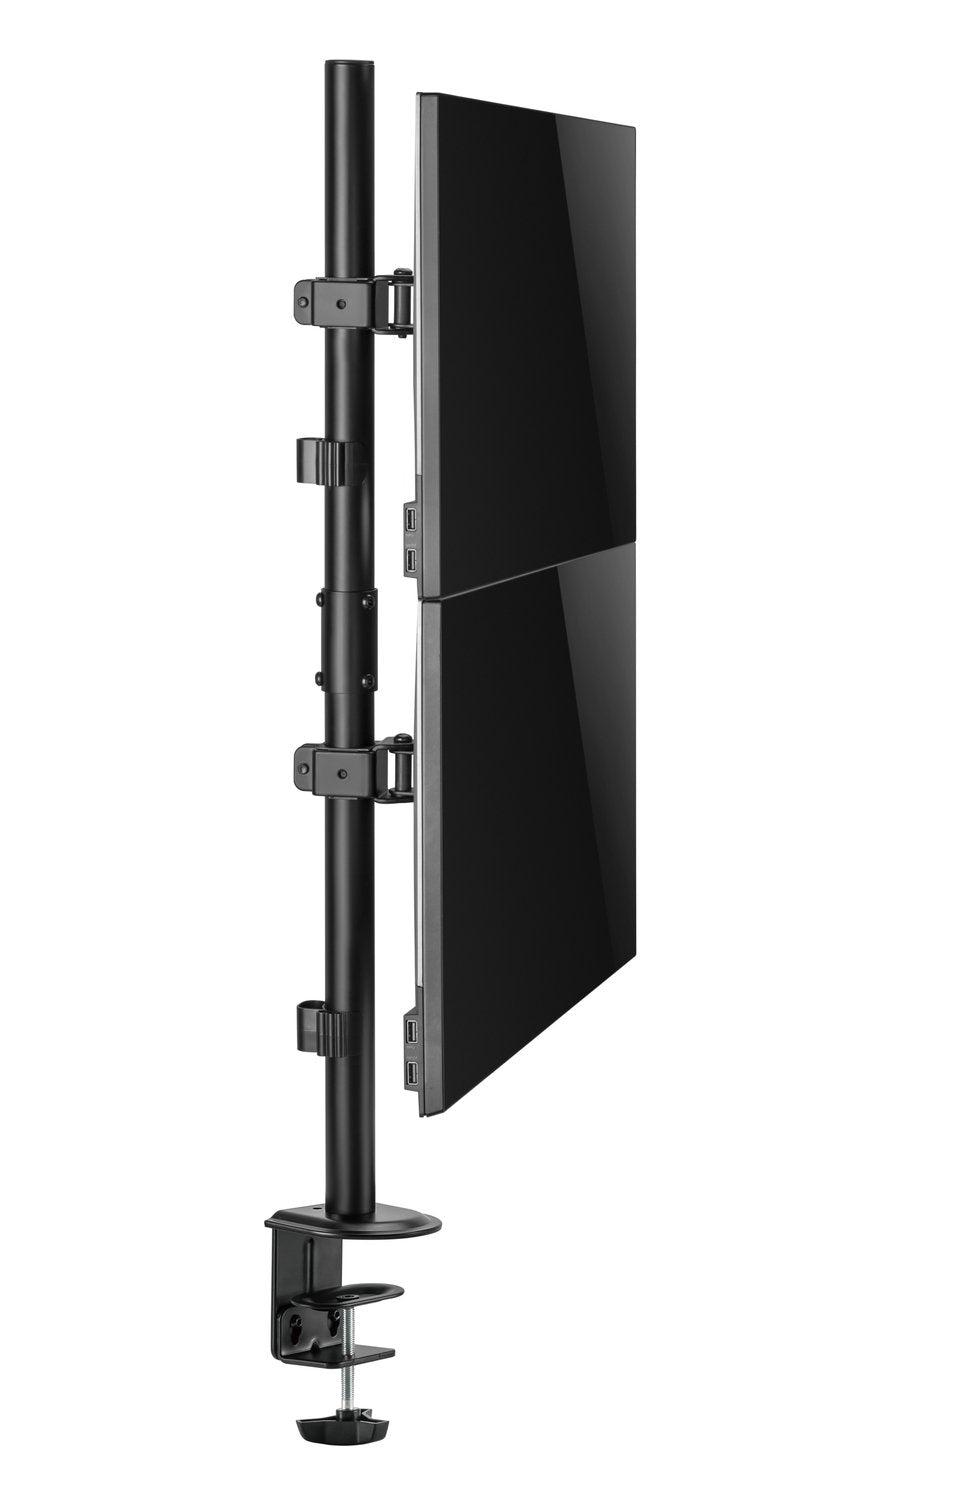 NÖRDIC Monitorarm bordfeste i stål for to skjermer 17-32 tommer, vippbar, roterbar og dreibar, svart, skjermfeste